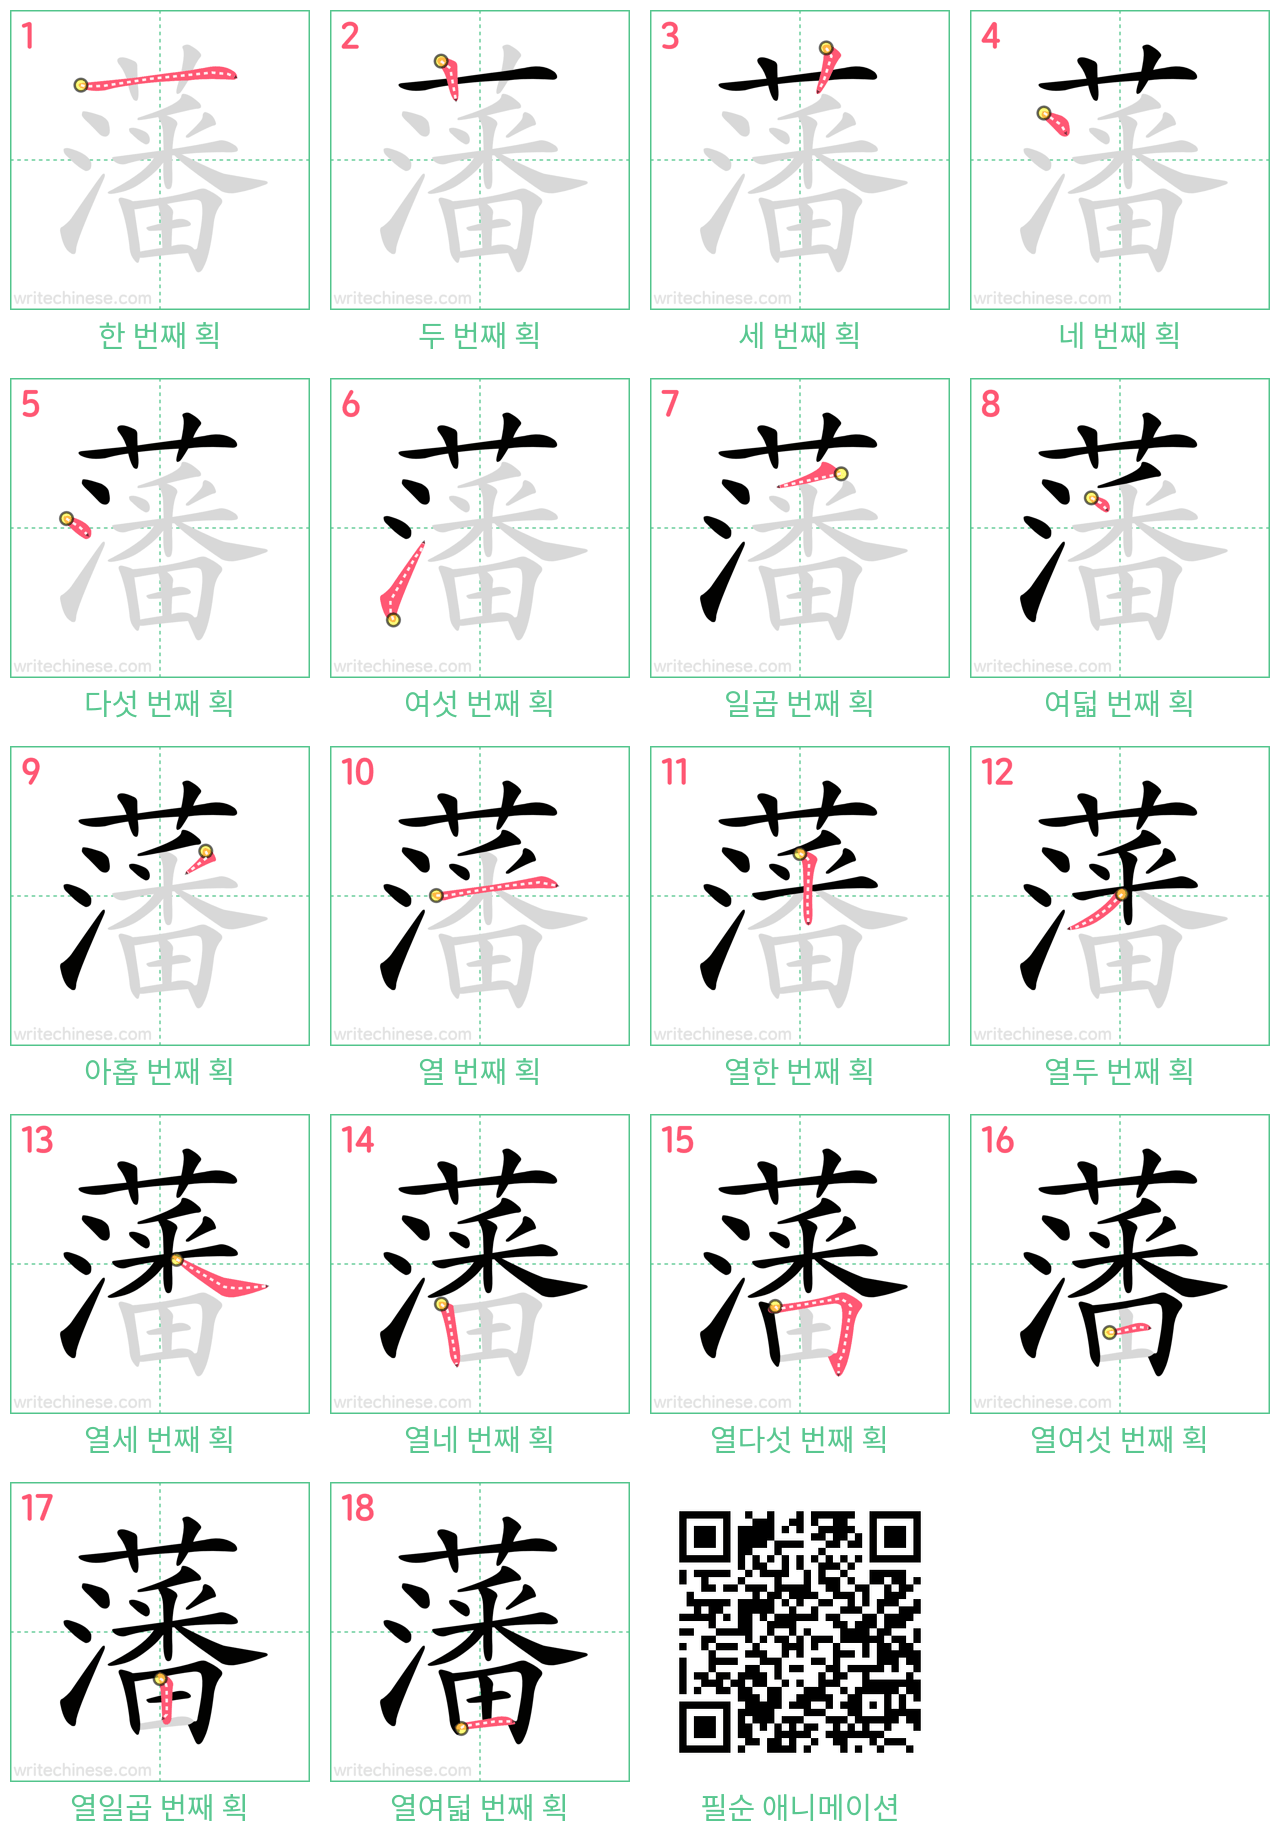 藩 step-by-step stroke order diagrams